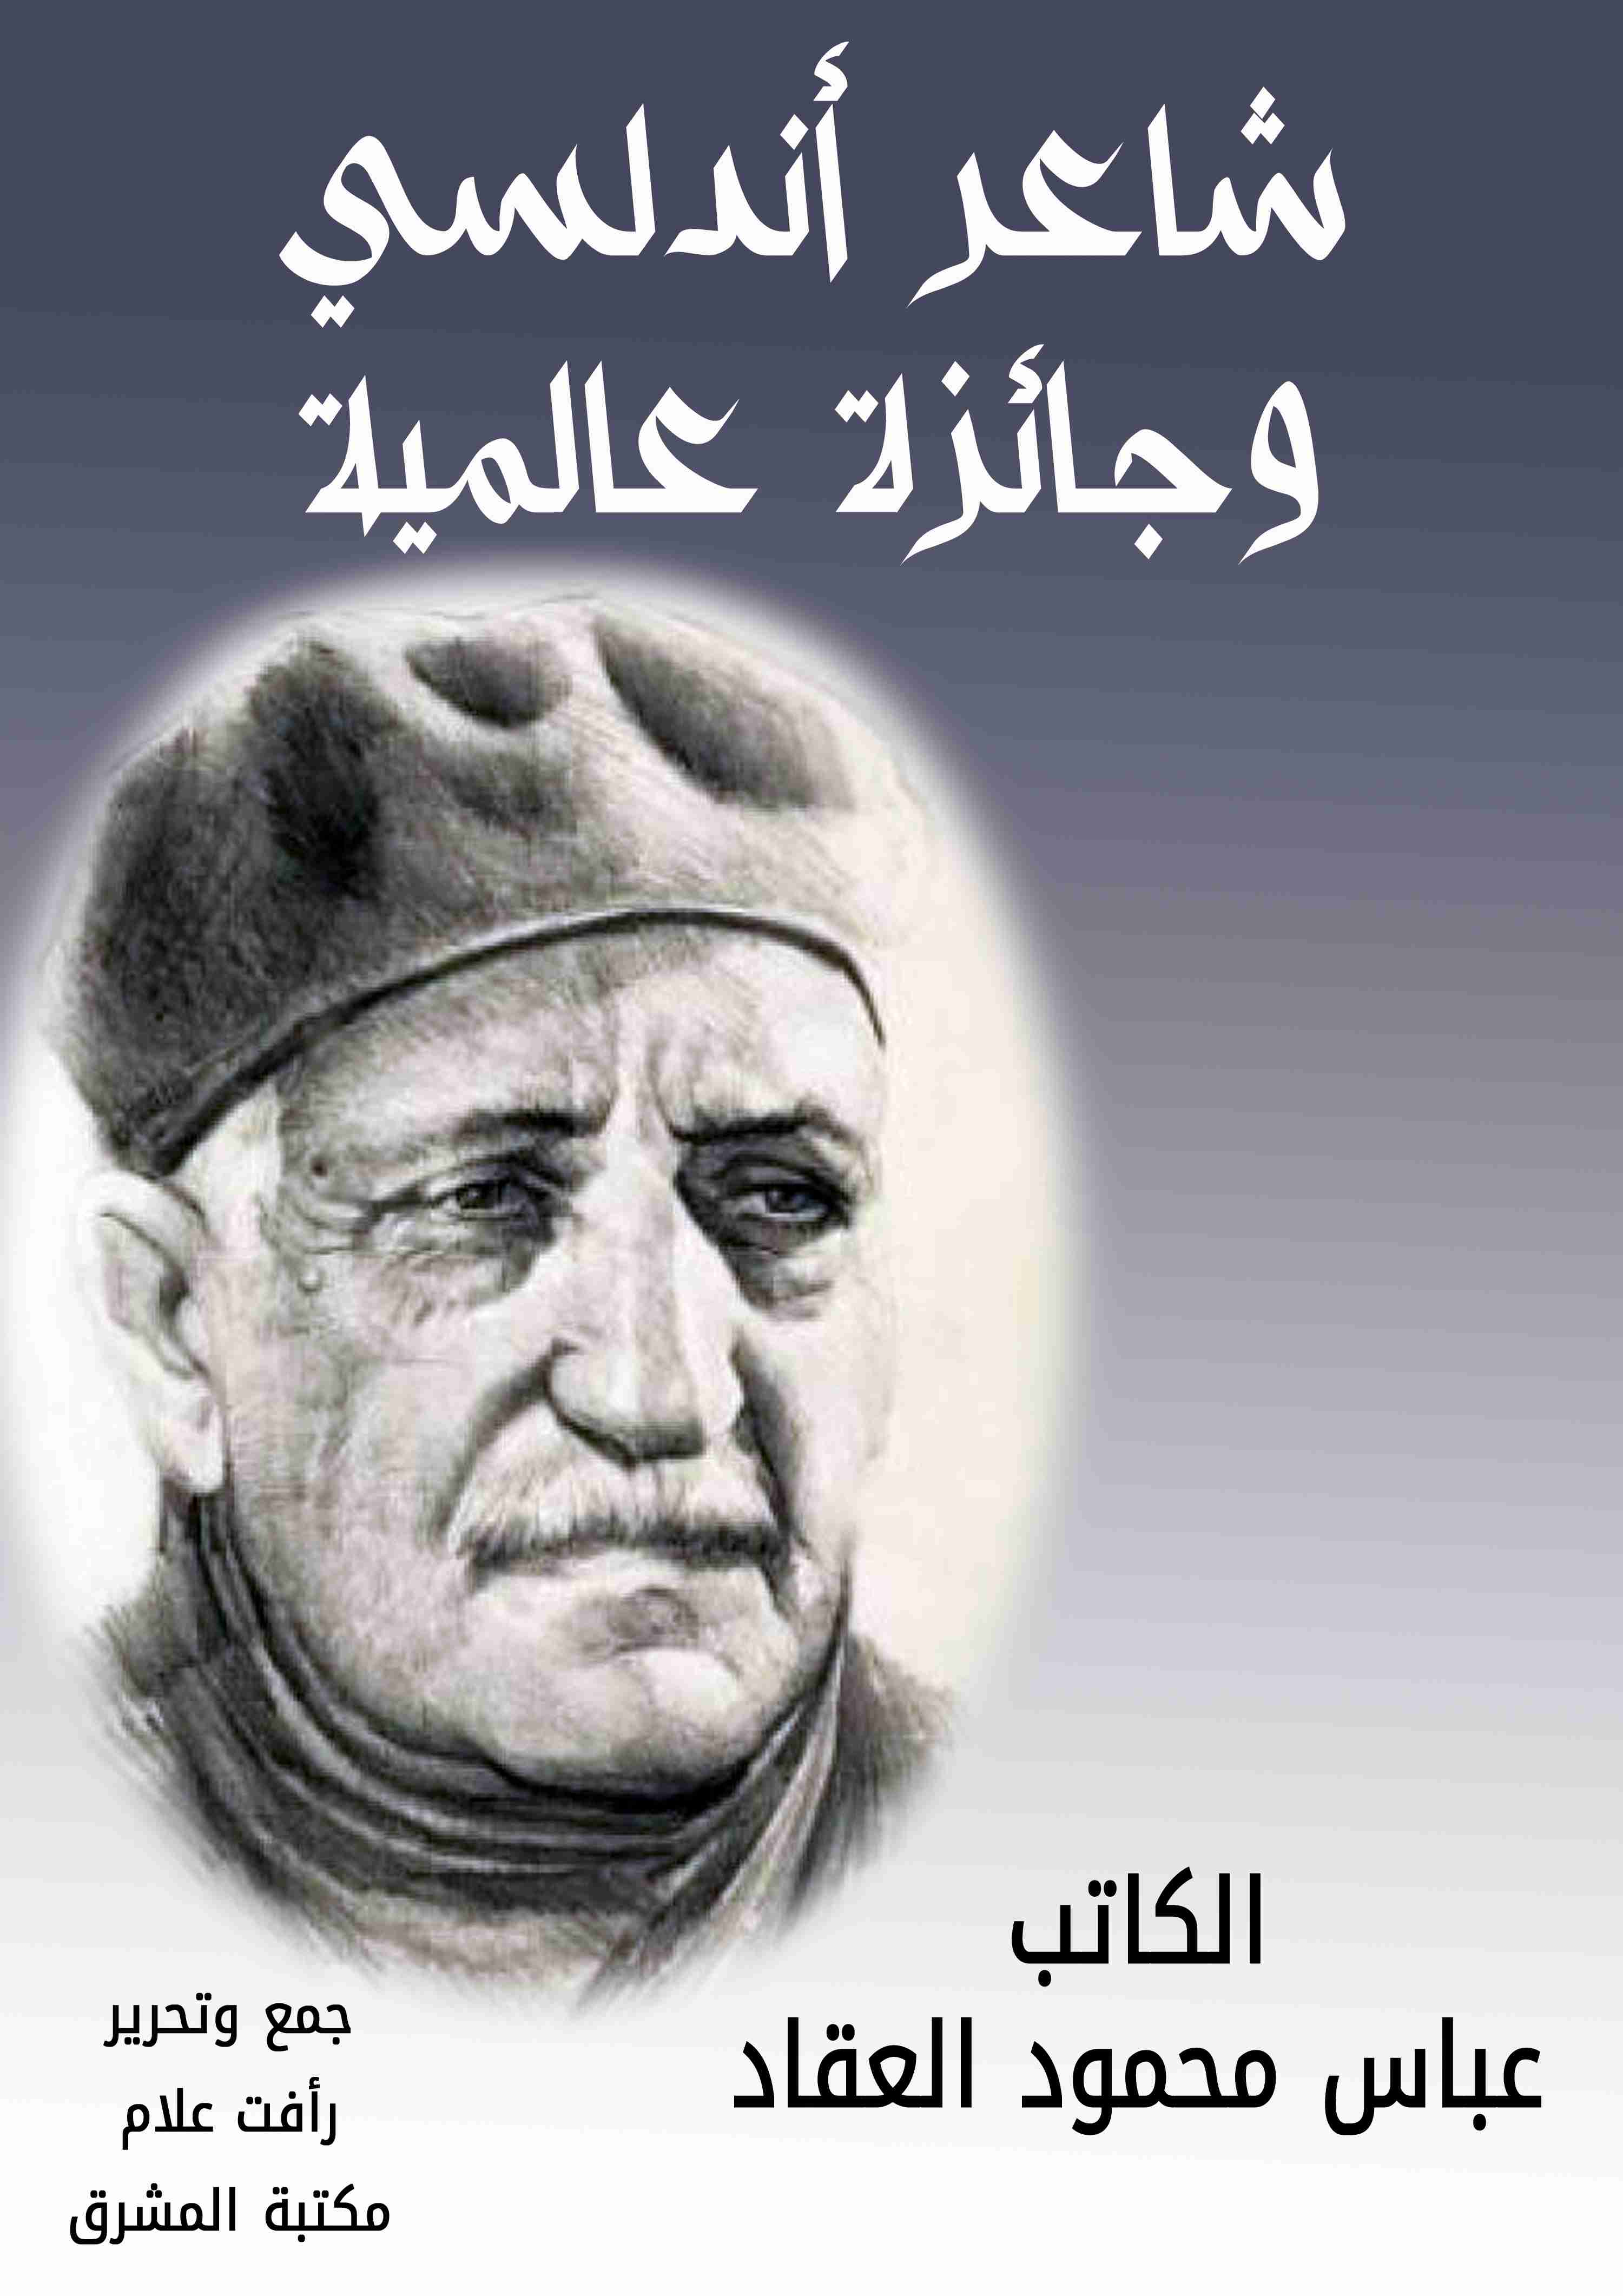 كتاب شاعر أندلسي وجائزة عالمية لـ عباس العقاد